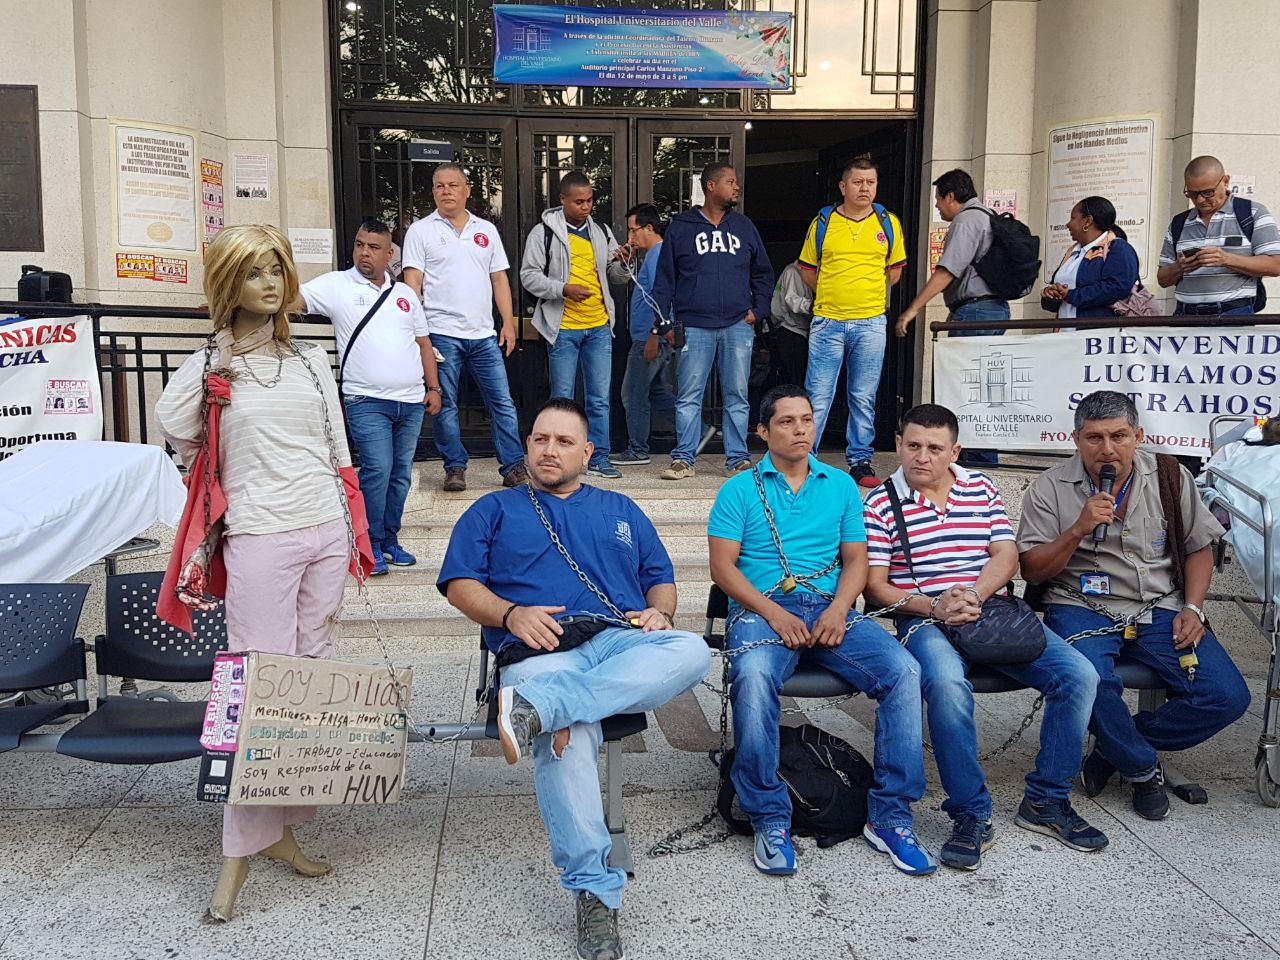 Encadenados, empleados del HUV protestan por lo que denominan «masacre laboral»